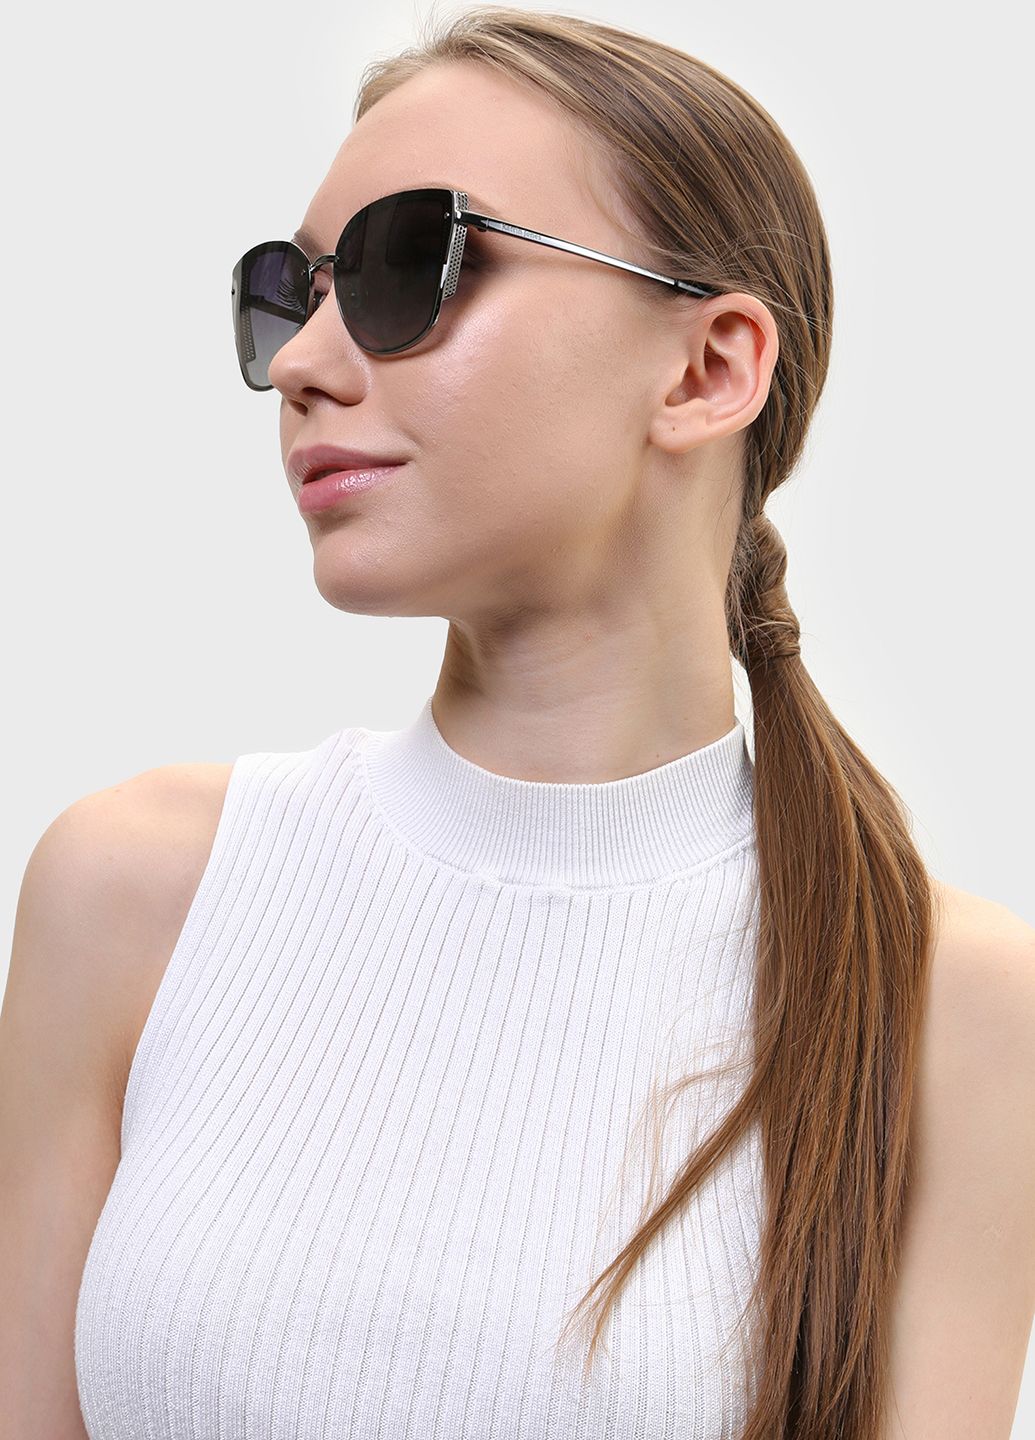 Купить Женские солнцезащитные очки Katrin Jones с поляризацией KJ0848 180053 - Черный в интернет-магазине